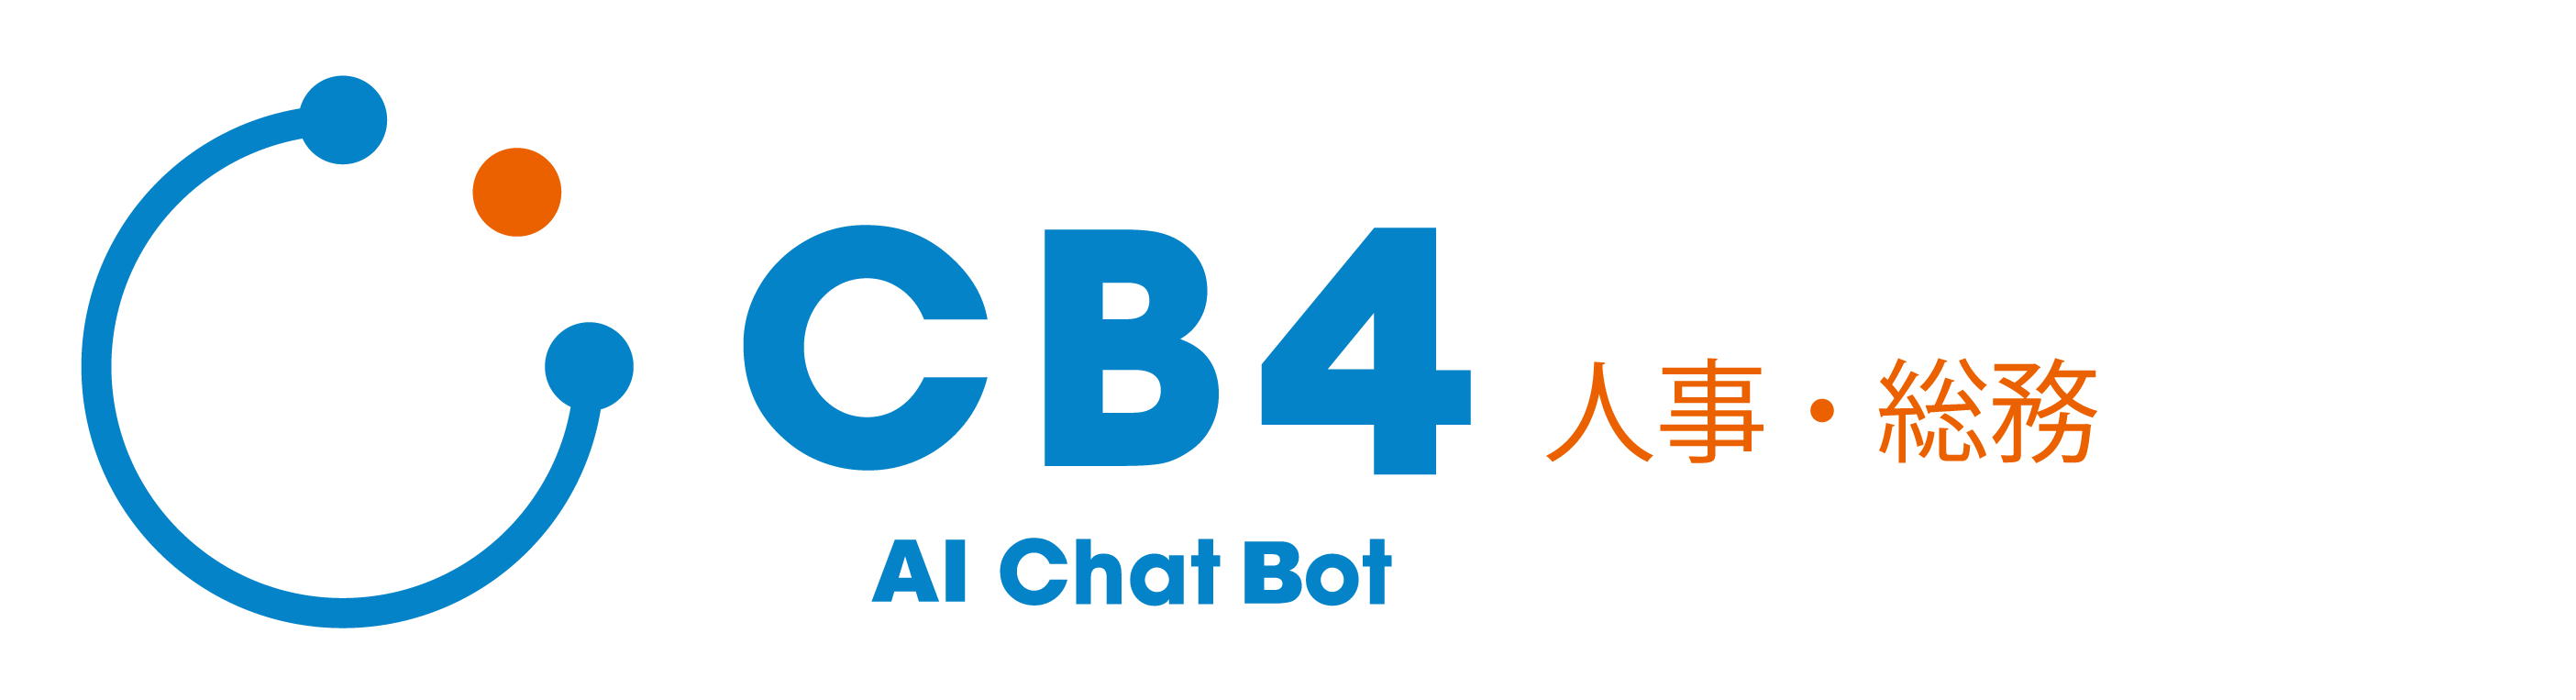 cb4_logo - V2_201907-02